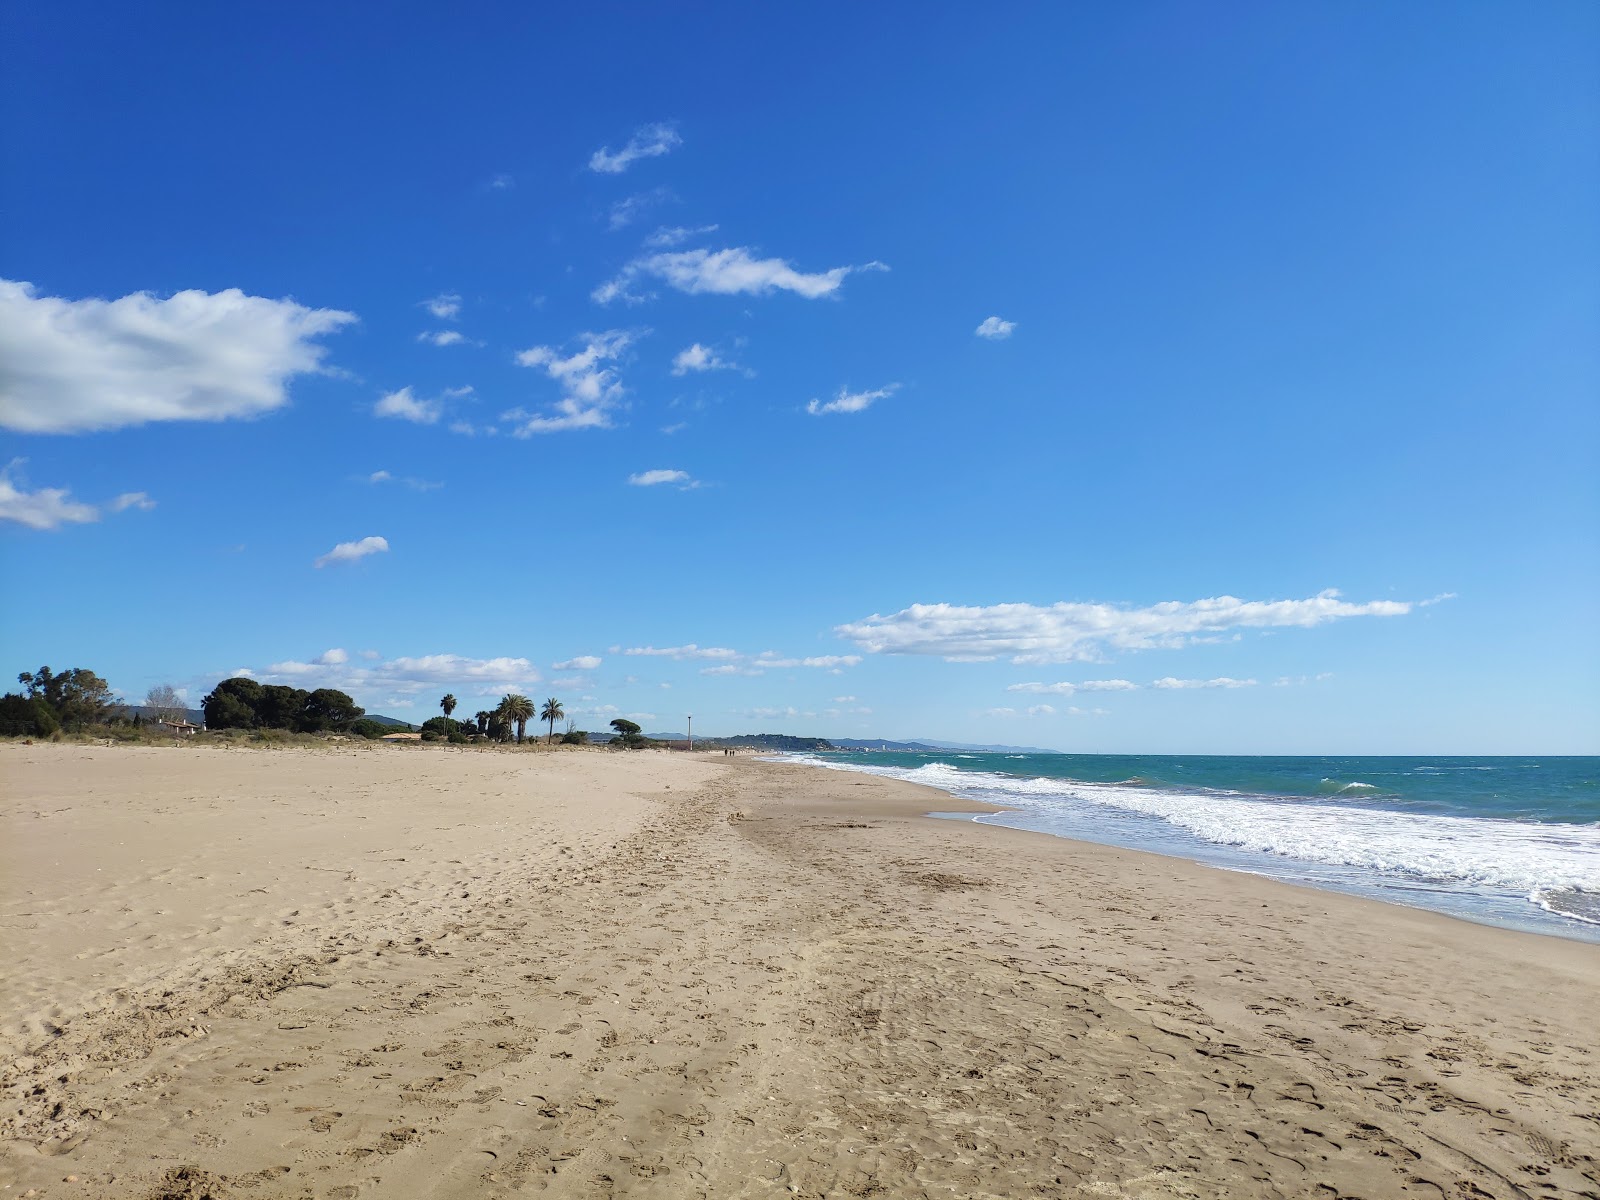 Playa Torredembarra'in fotoğrafı kahverengi kum yüzey ile